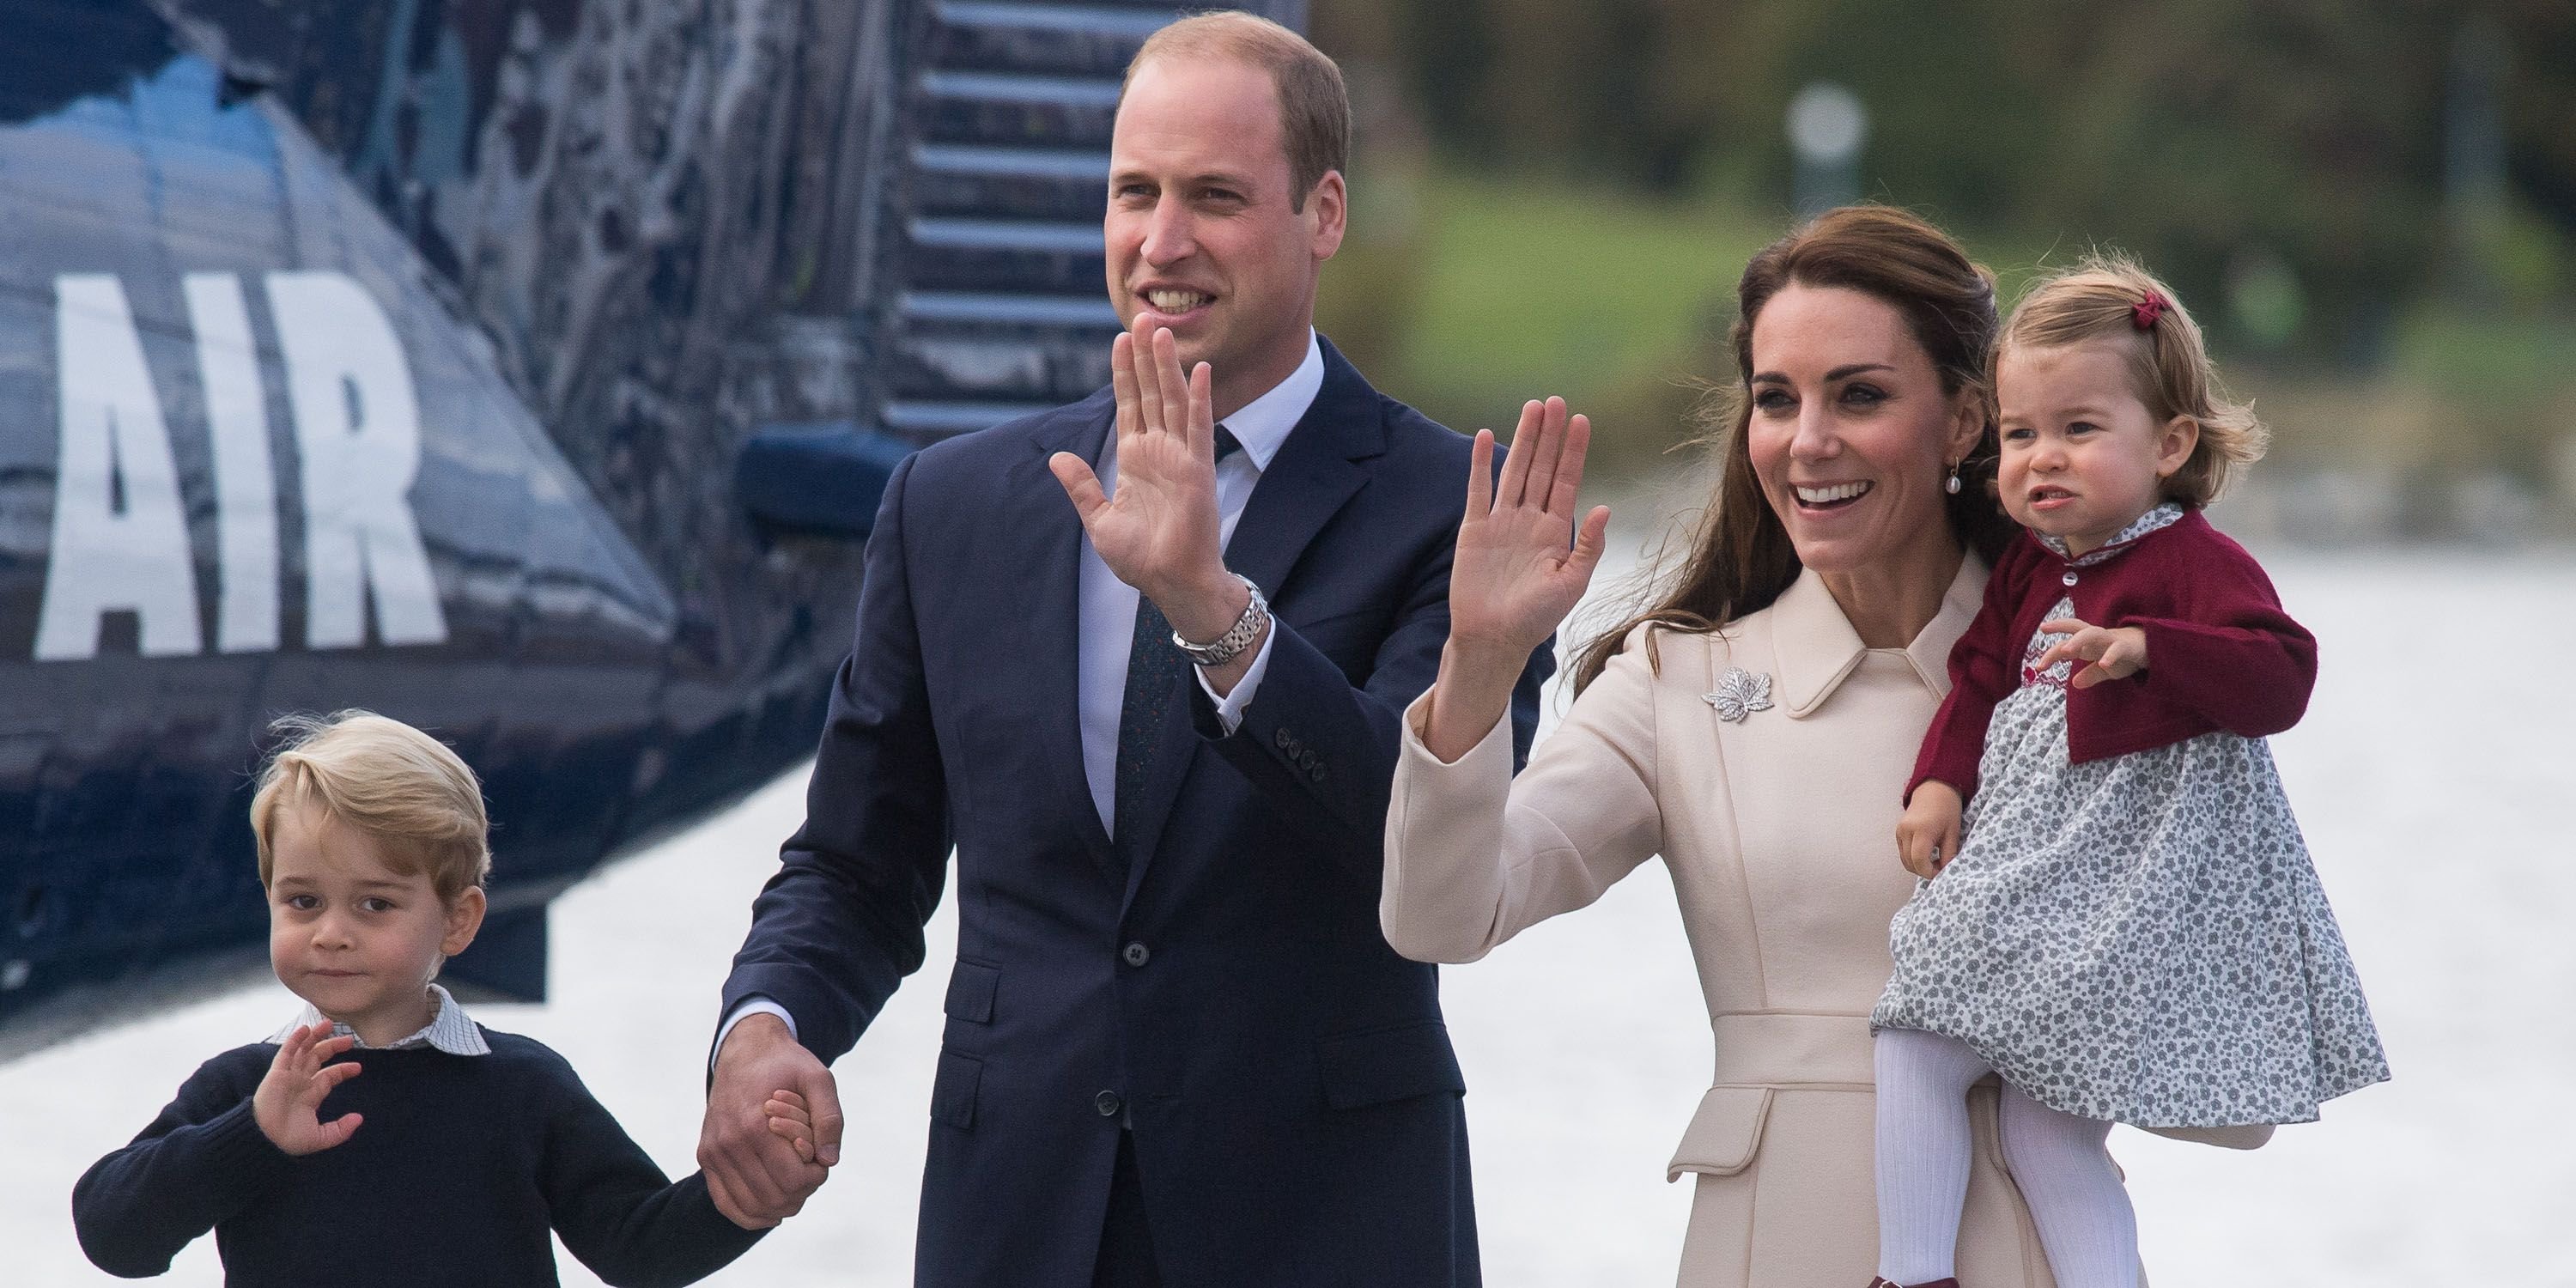 hbz cambridges 611851174 1517857211.jpg?resize=412,232 - Nasce o terceiro filho de Príncipe William e Kate Middleton